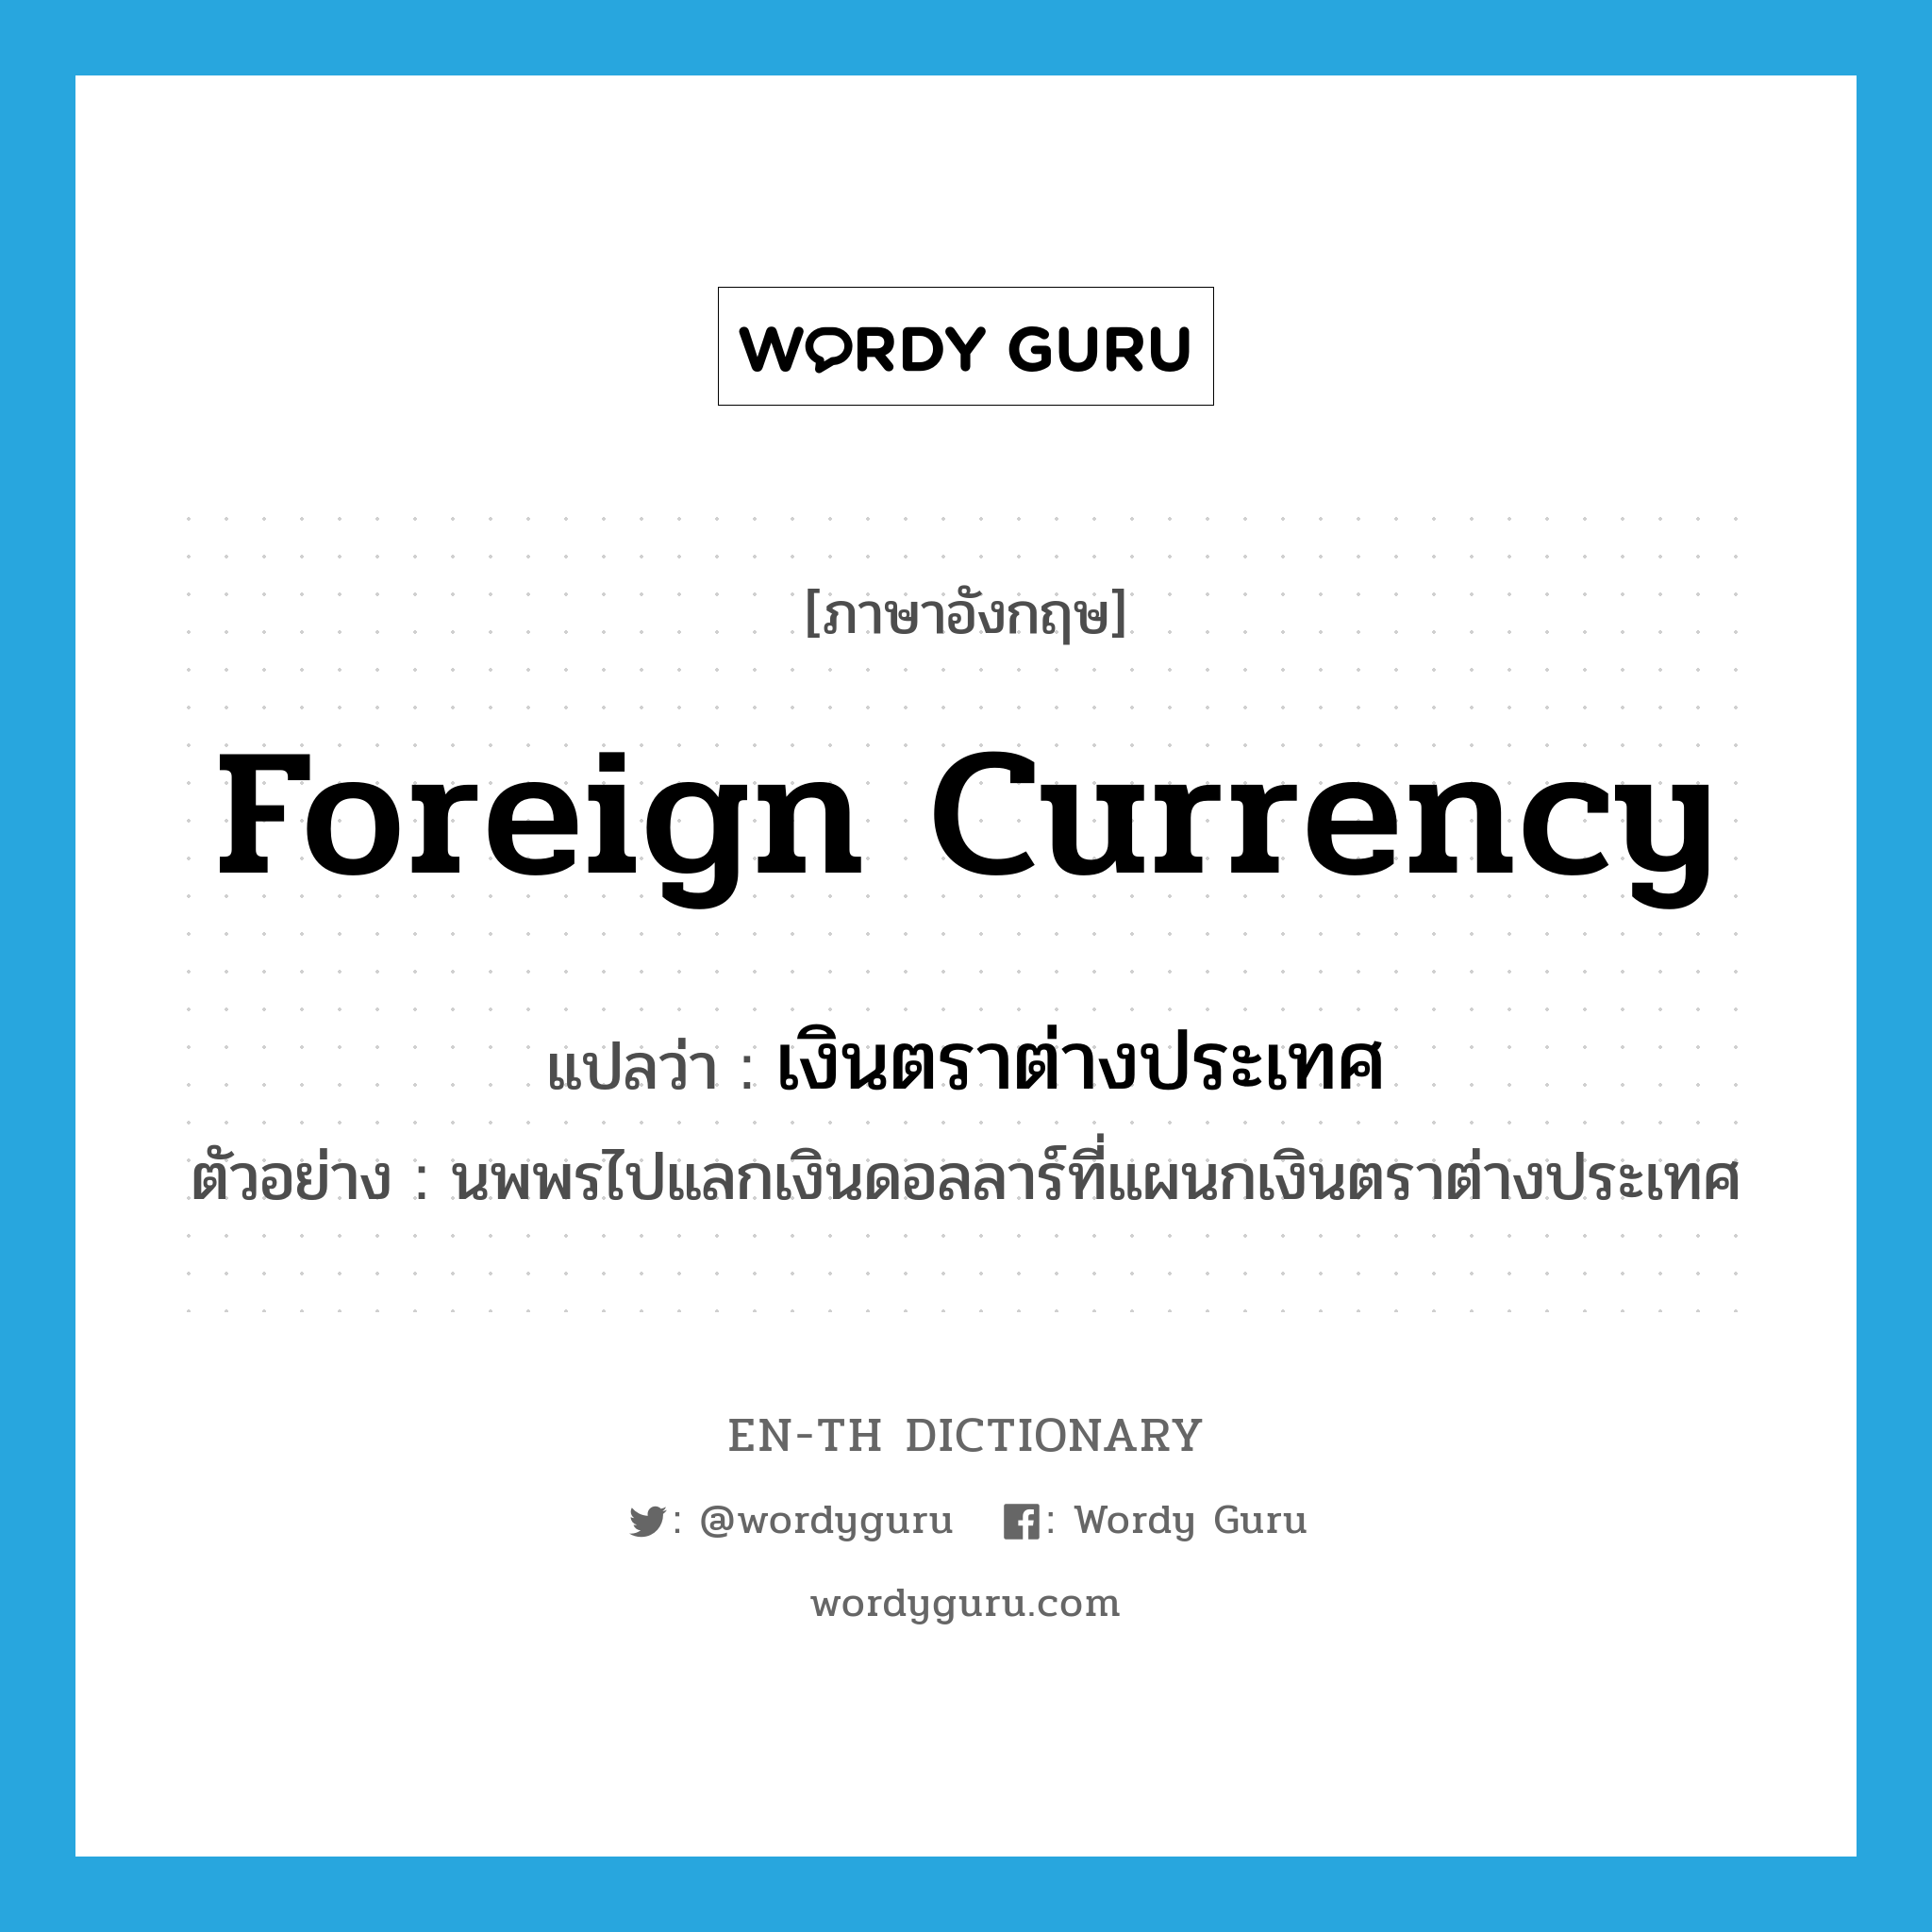 foreign currency แปลว่า?, คำศัพท์ภาษาอังกฤษ foreign currency แปลว่า เงินตราต่างประเทศ ประเภท N ตัวอย่าง นพพรไปแลกเงินดอลลาร์ที่แผนกเงินตราต่างประเทศ หมวด N